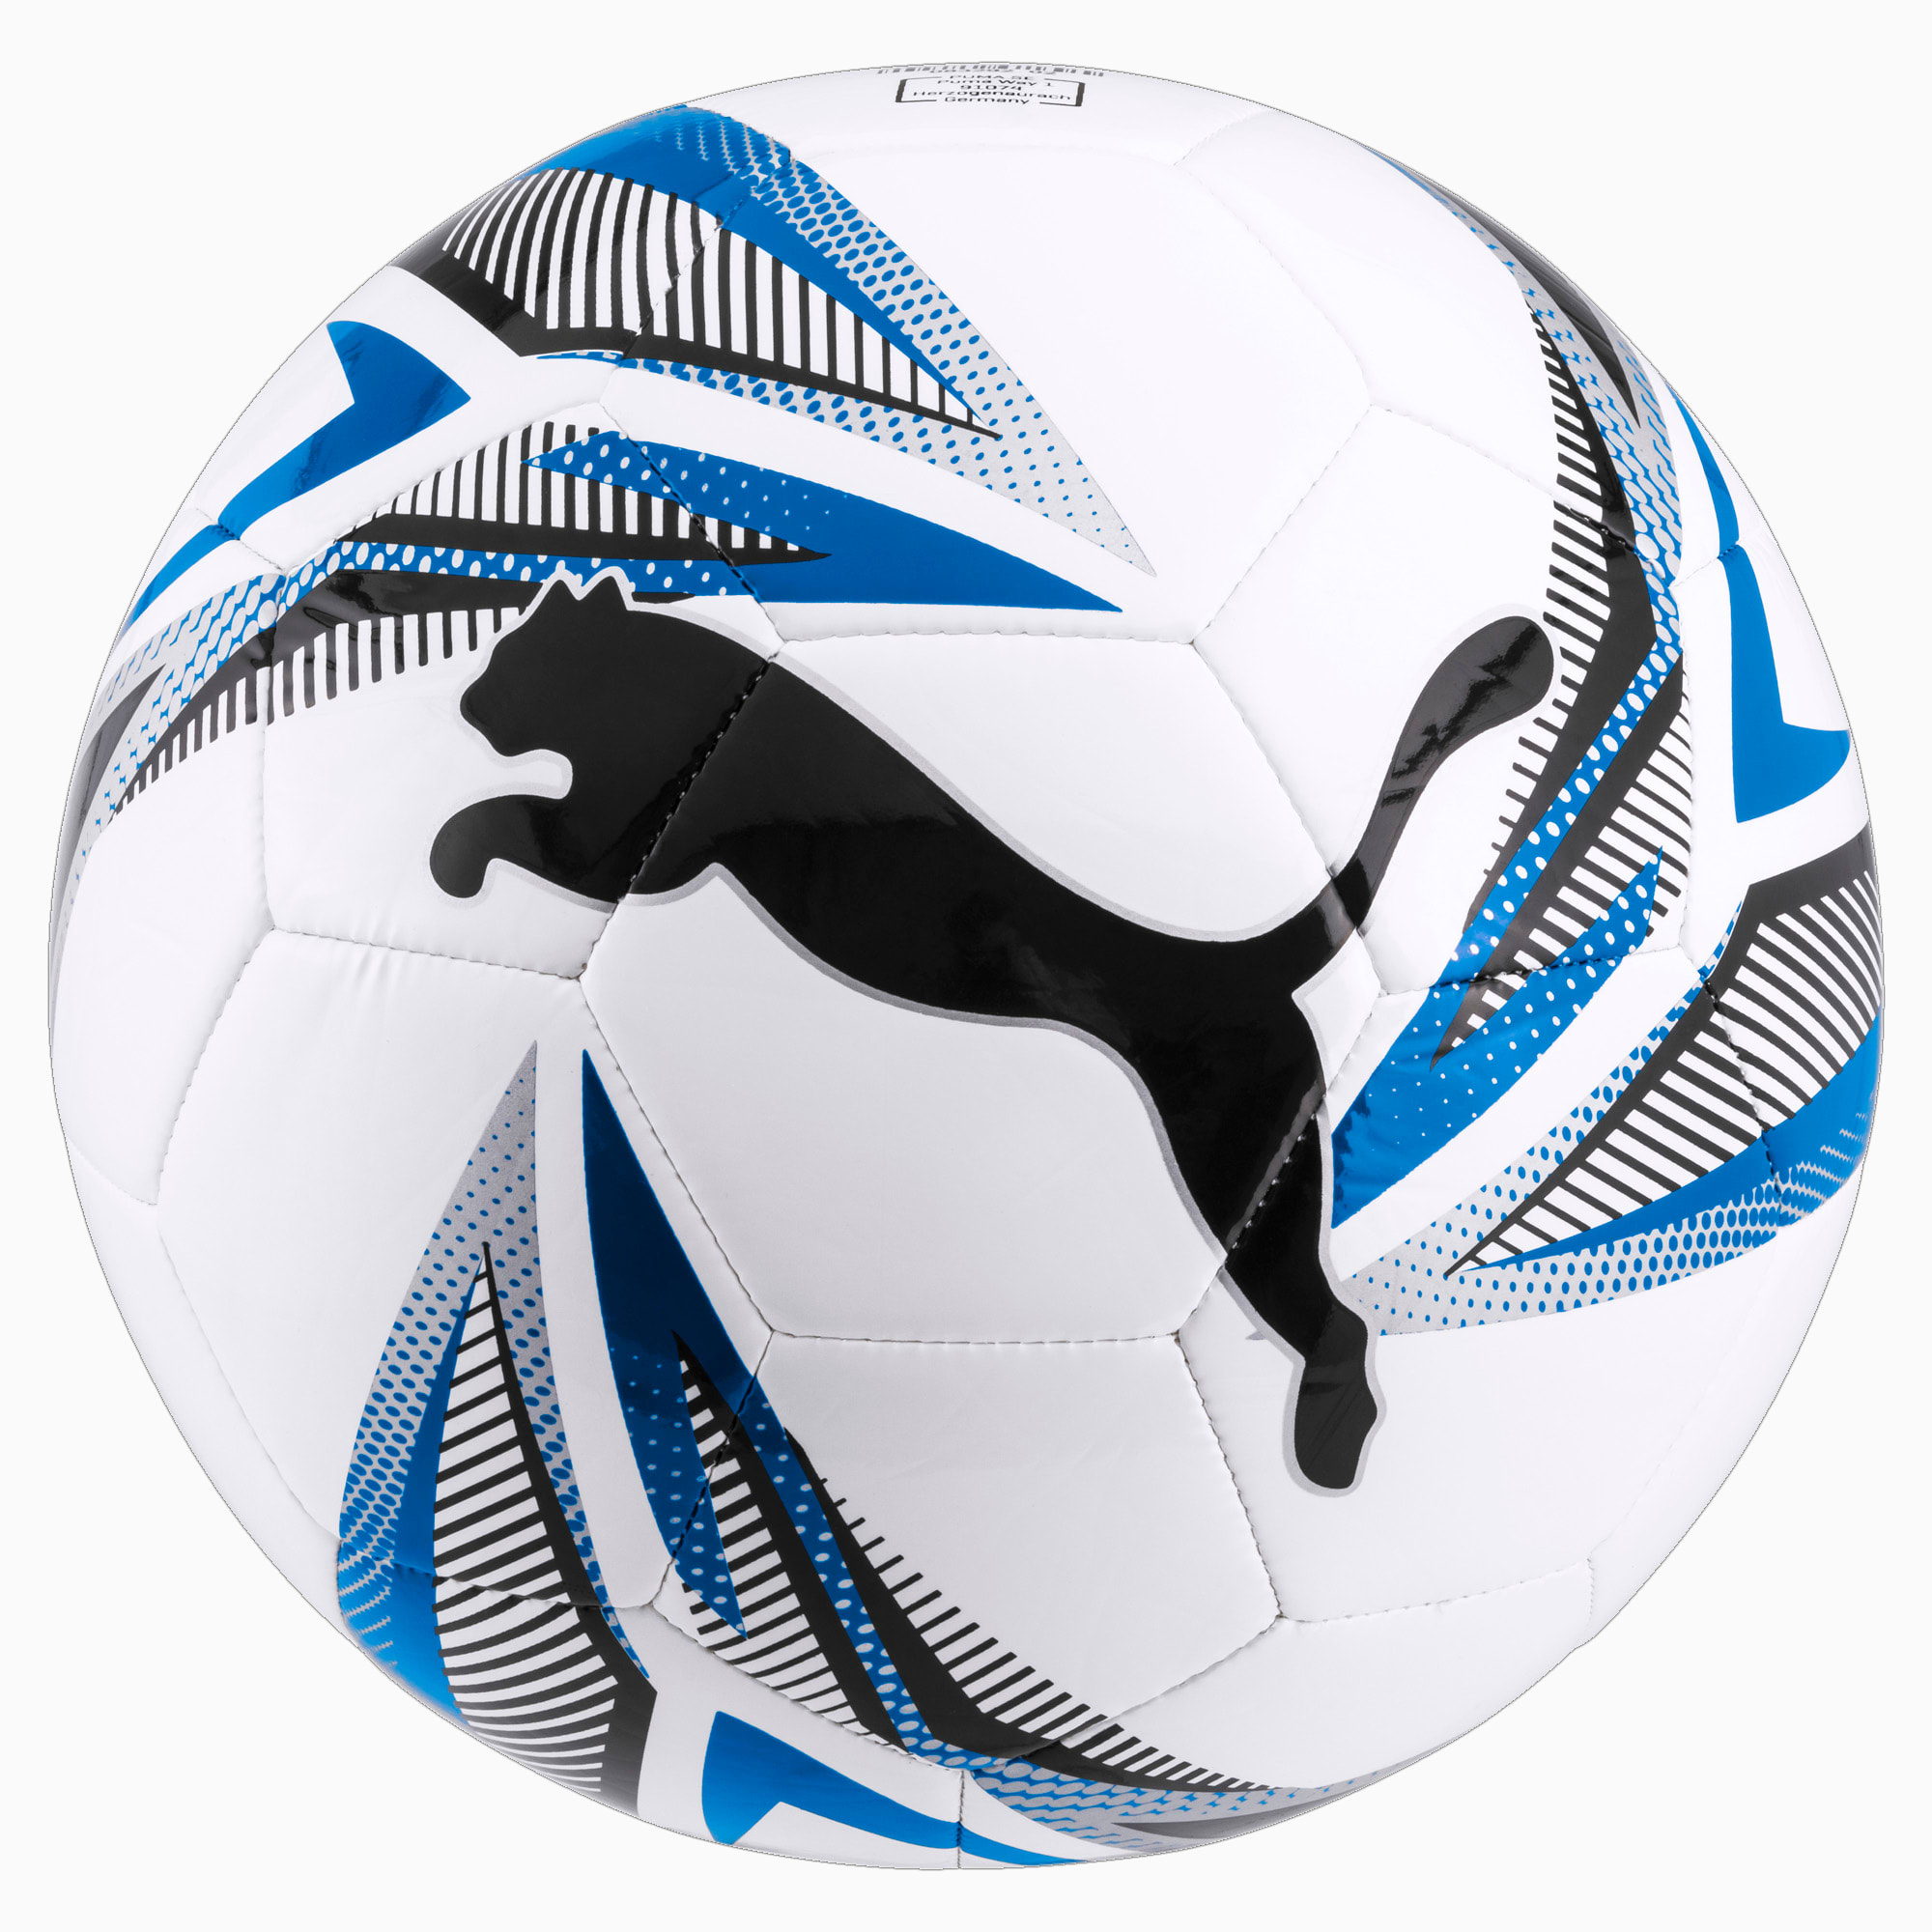 Image of PUMA ftblPLAY Big Cat Fußball | Mit Aucun | Weiß/Blau/Schwarz | Größe: 3